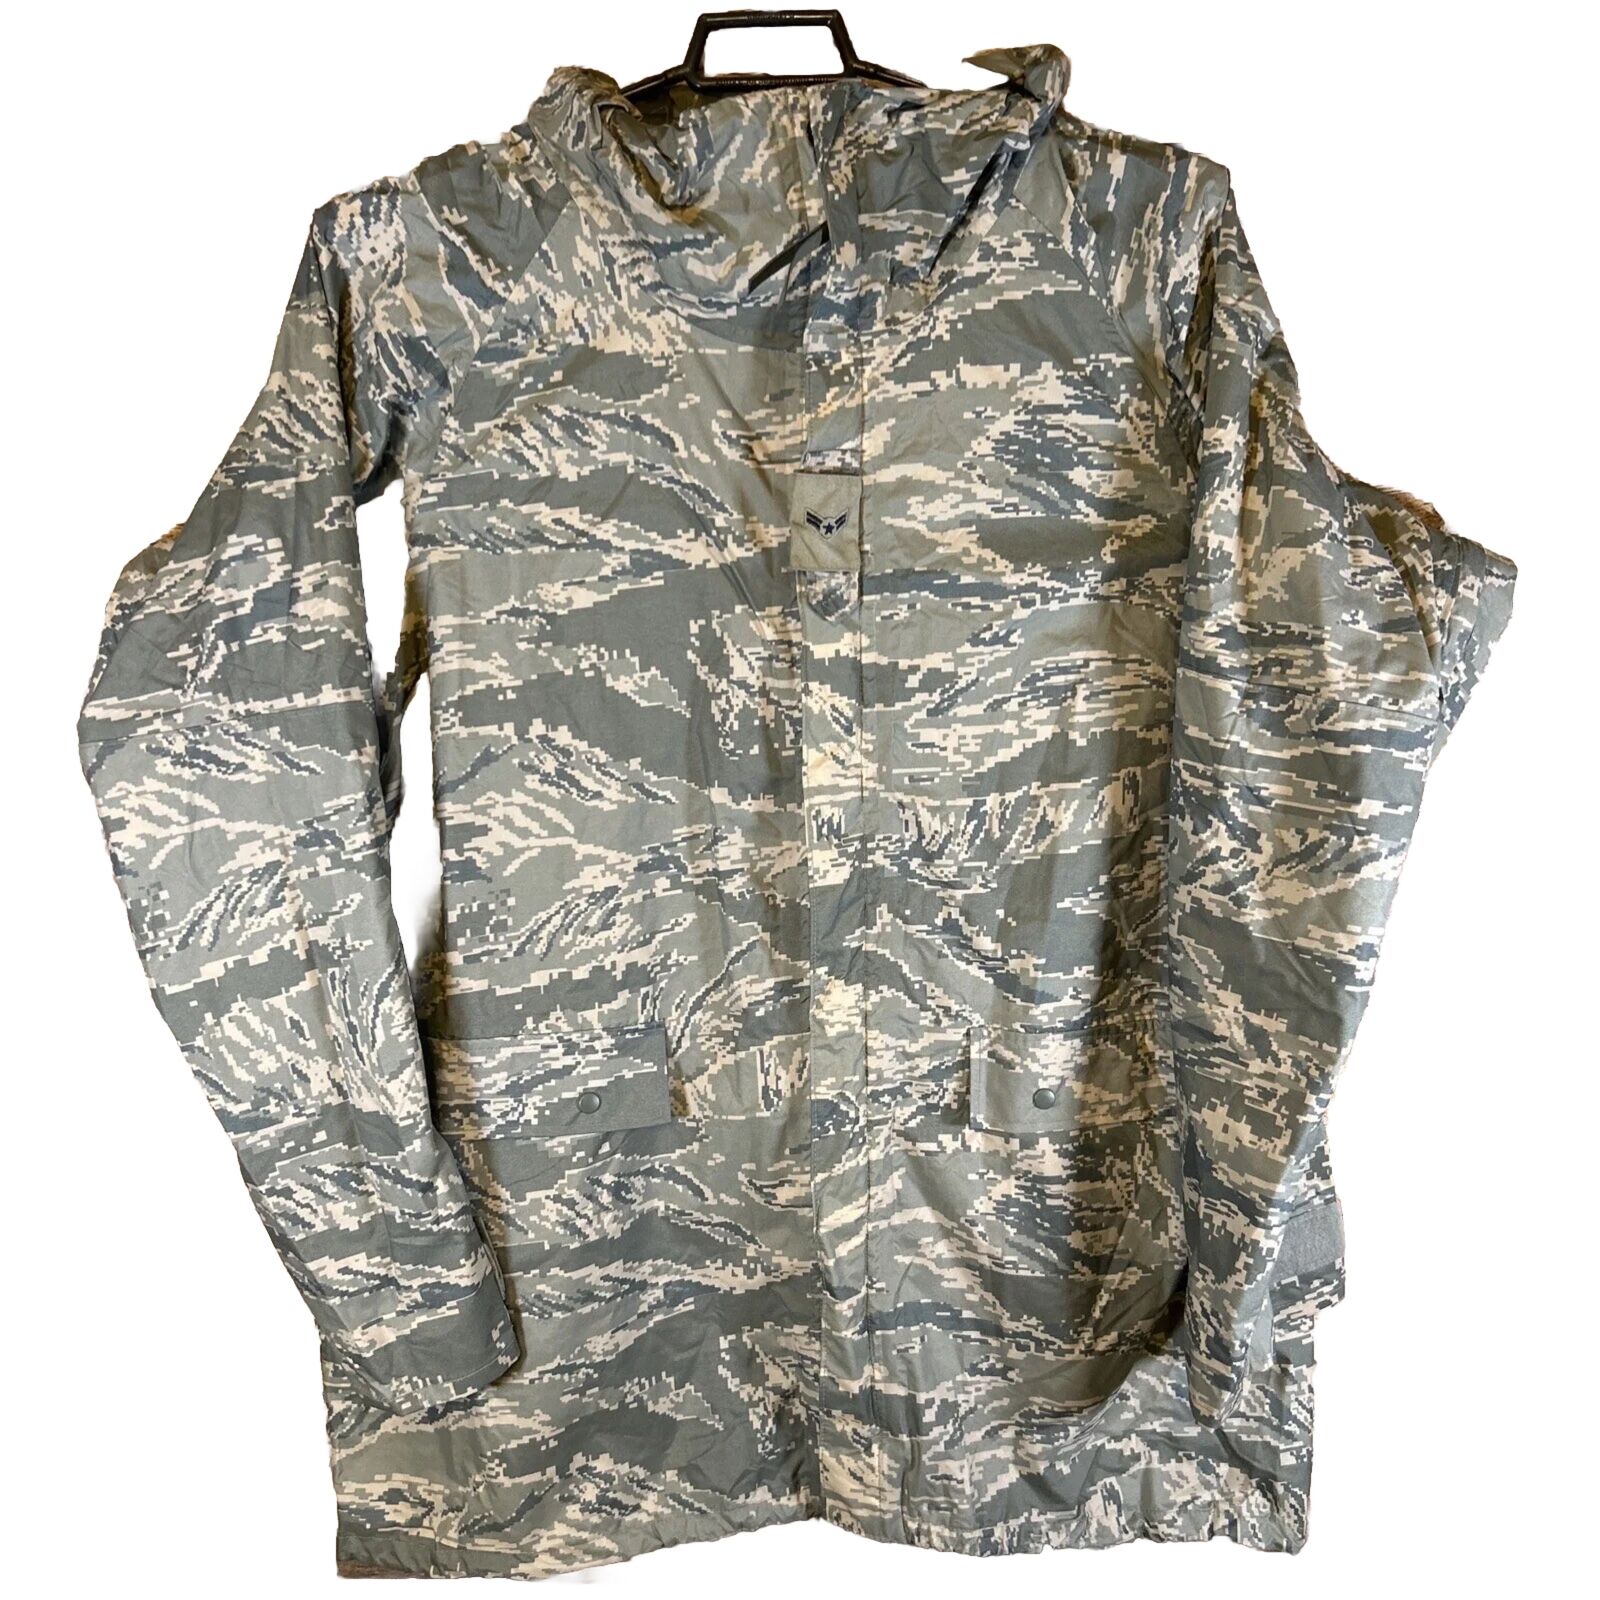 ORC Military NWOT Parka Improved Rainsuit Jacket MEDIUM Green Camouflage - AC